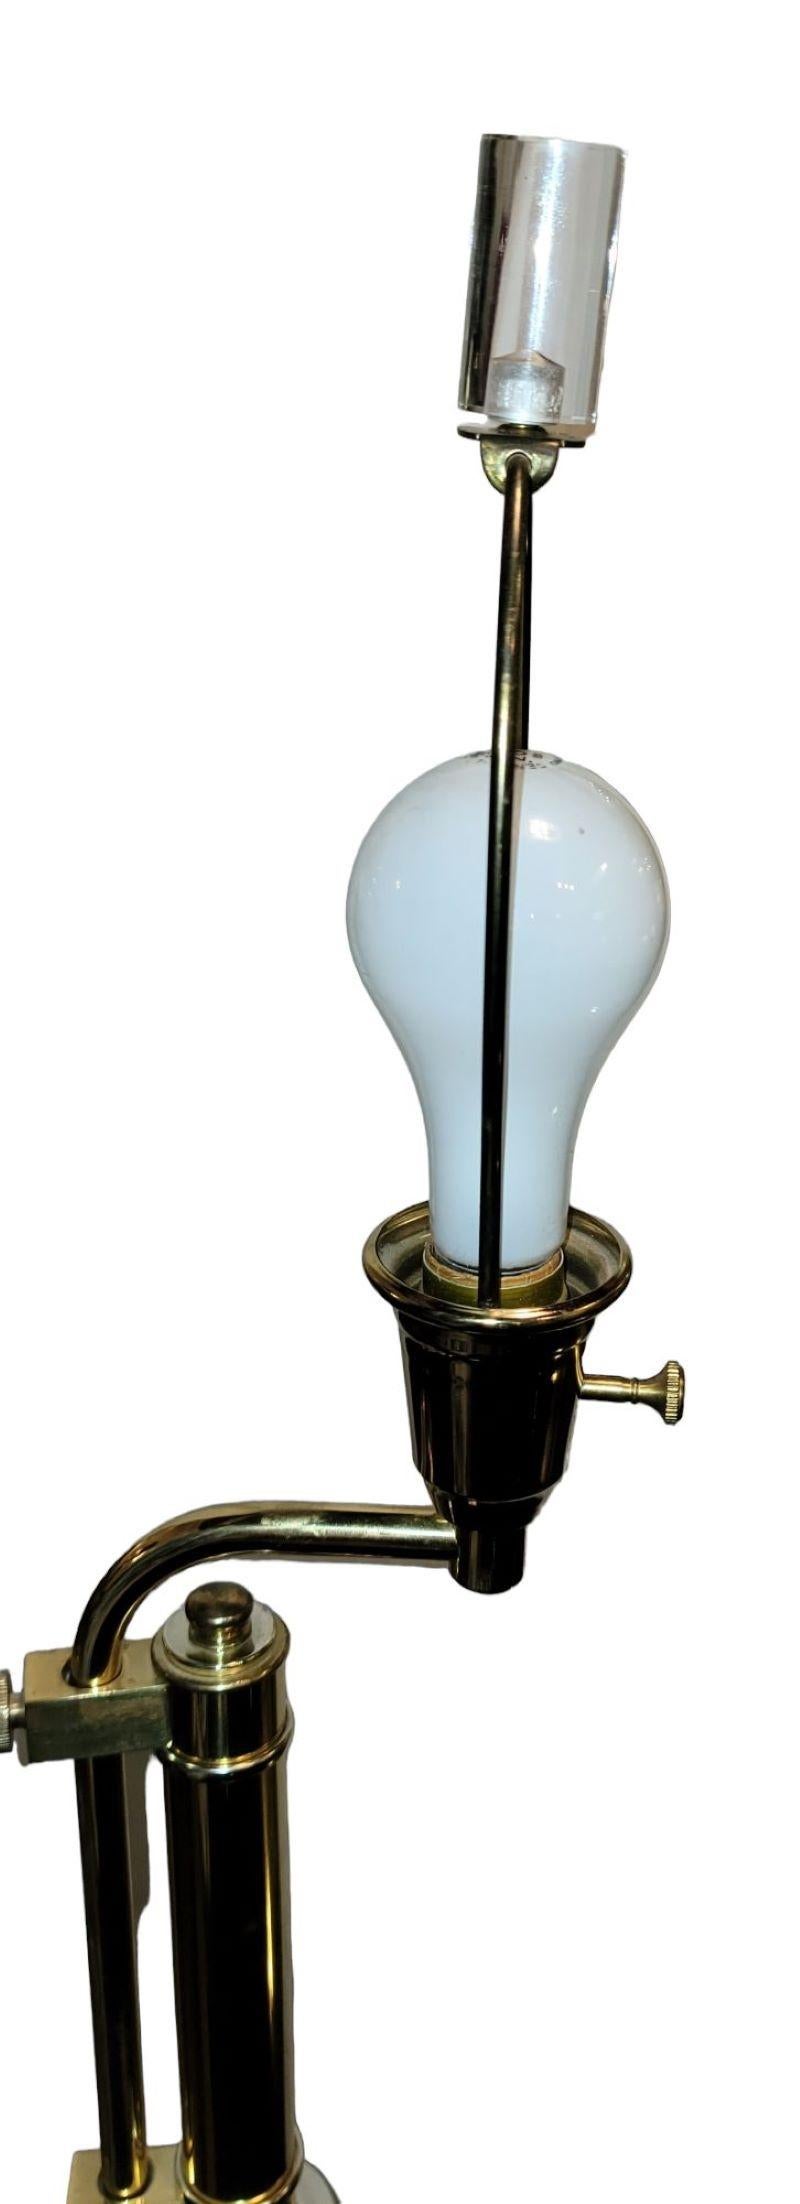 1960er Jahre Charles Hollis Jones Lucite Lampe mit Messing-Zubehör. Diese Lucite Stehleuchte bietet ein wunderbares, tiefes Licht, das vom Lucite-Rahmen reflektiert wird. Das Messing leuchtet durch die von oben kommende Beleuchtung. 
Diese